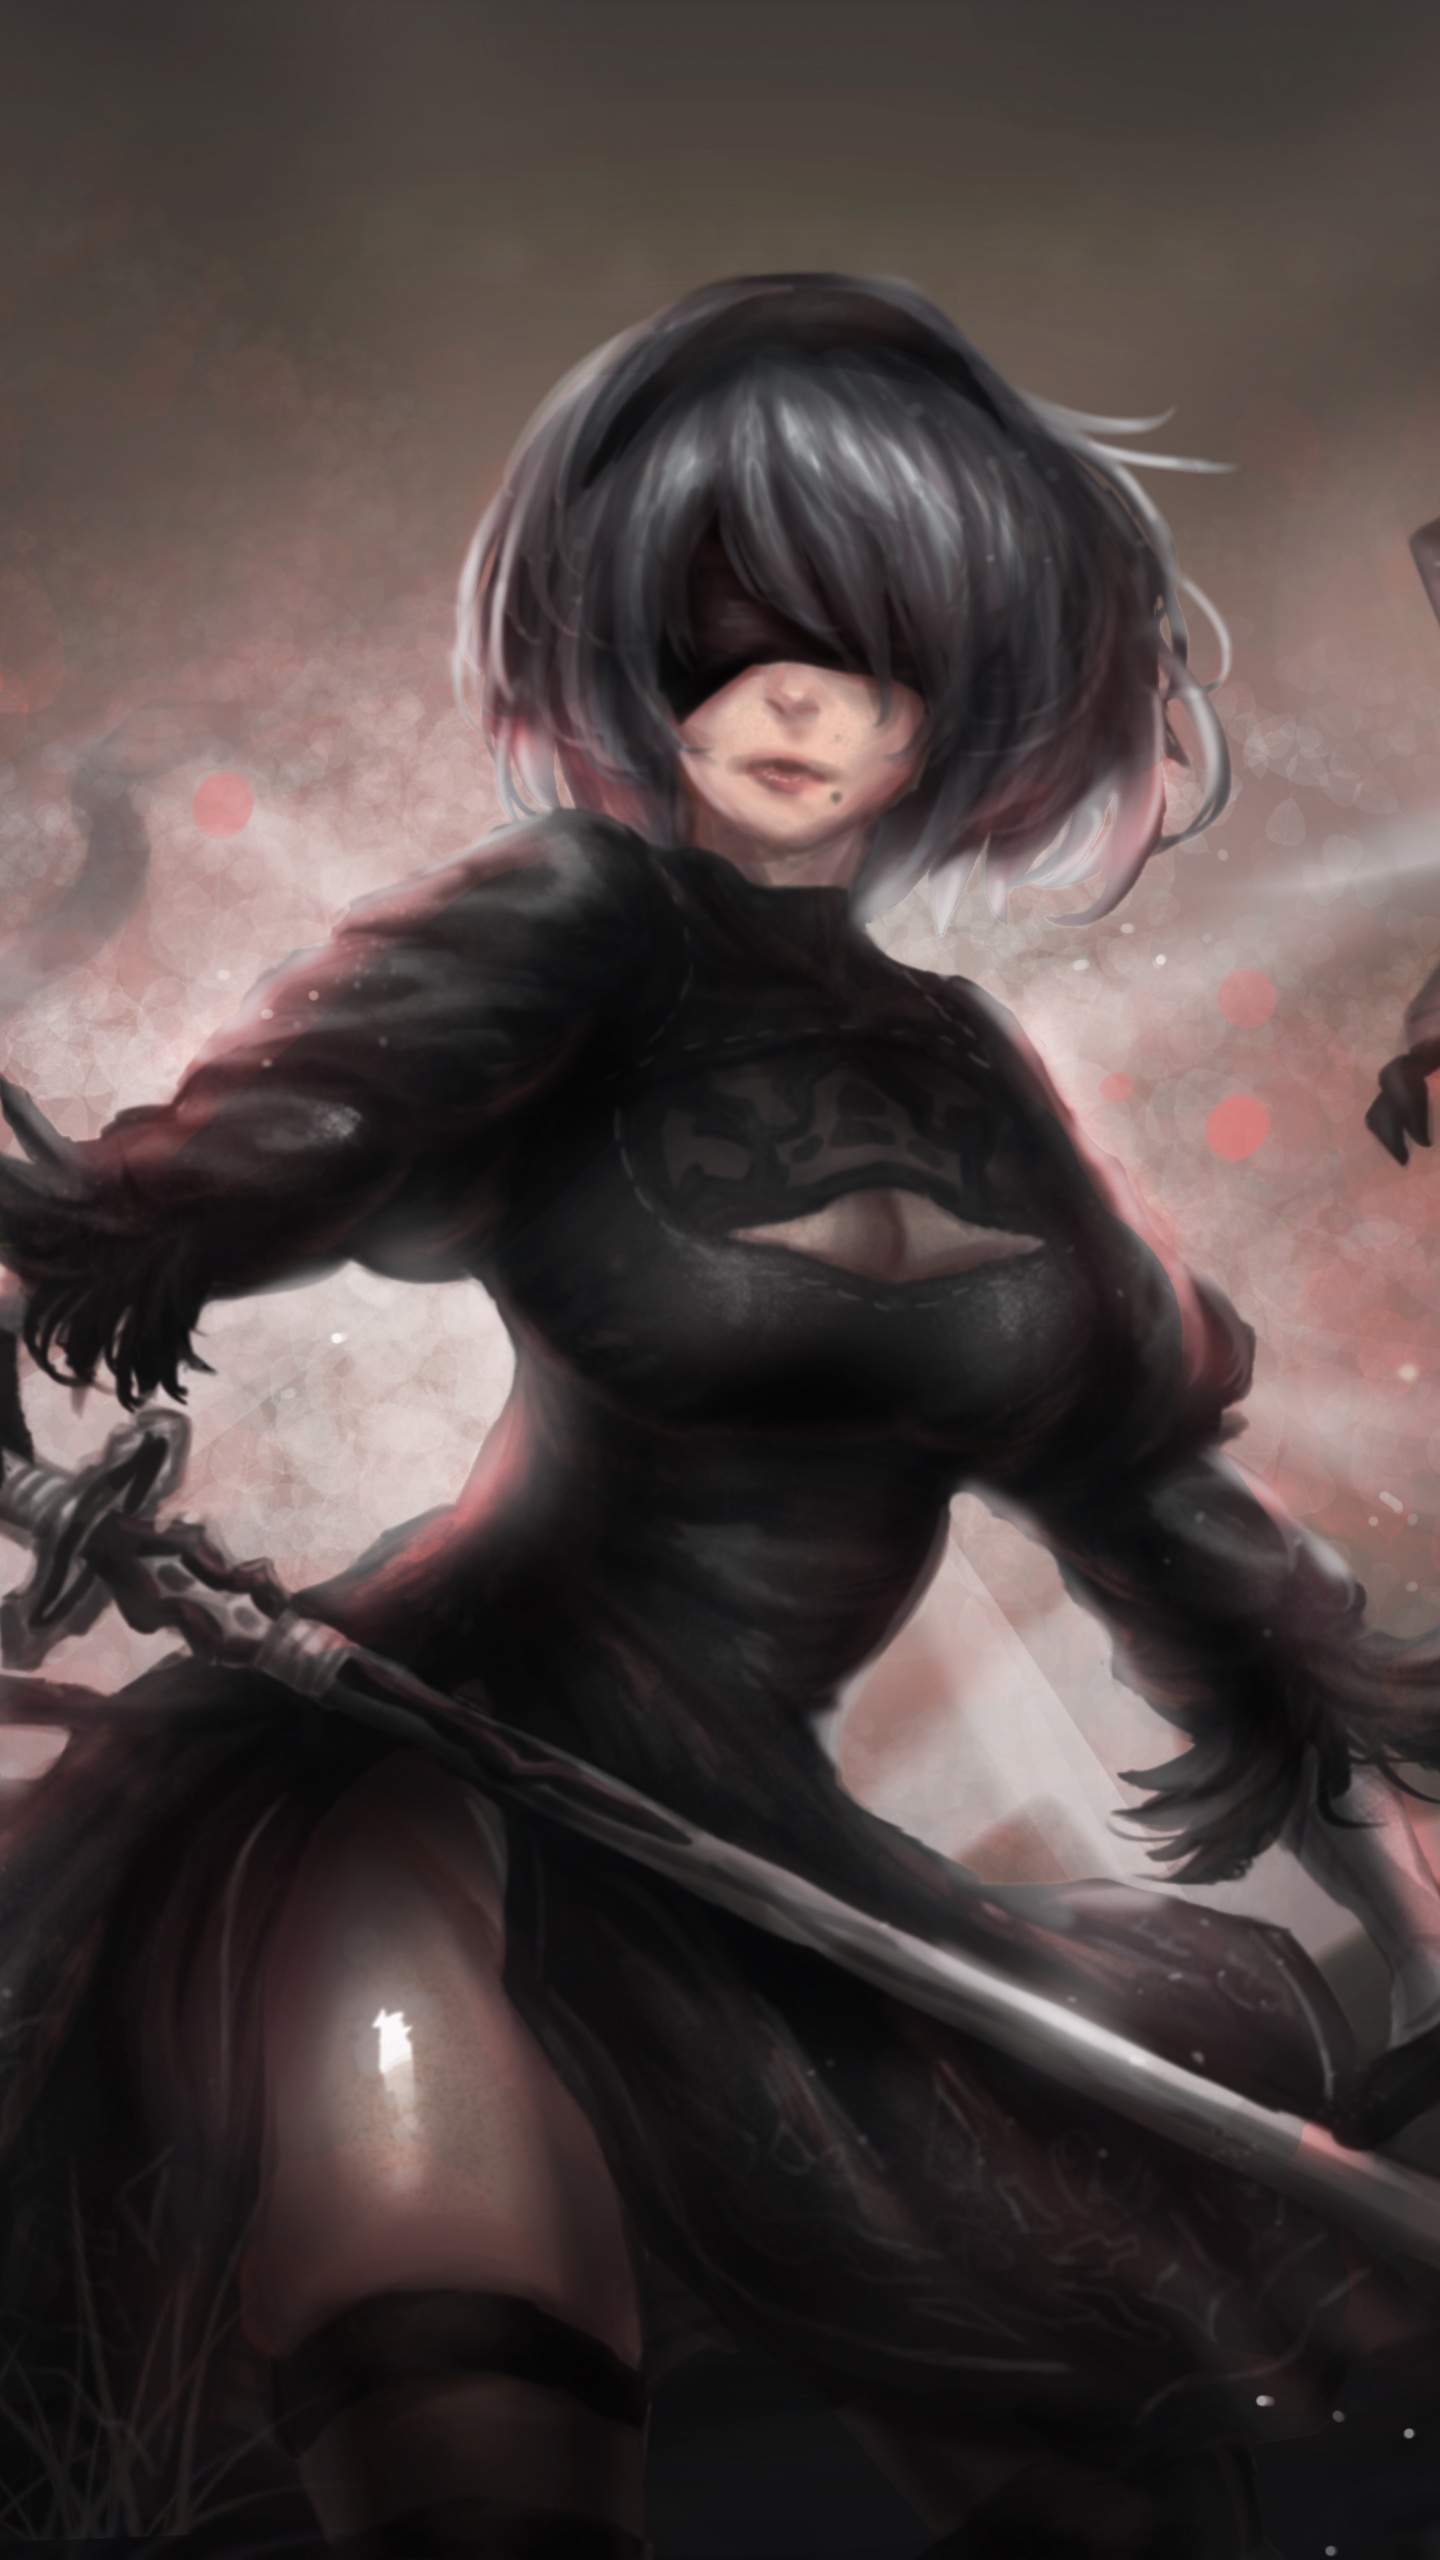 Mujer en Camisa de Manga Larga Negra Con Arma Negra. Wallpaper in 1440x2560 Resolution